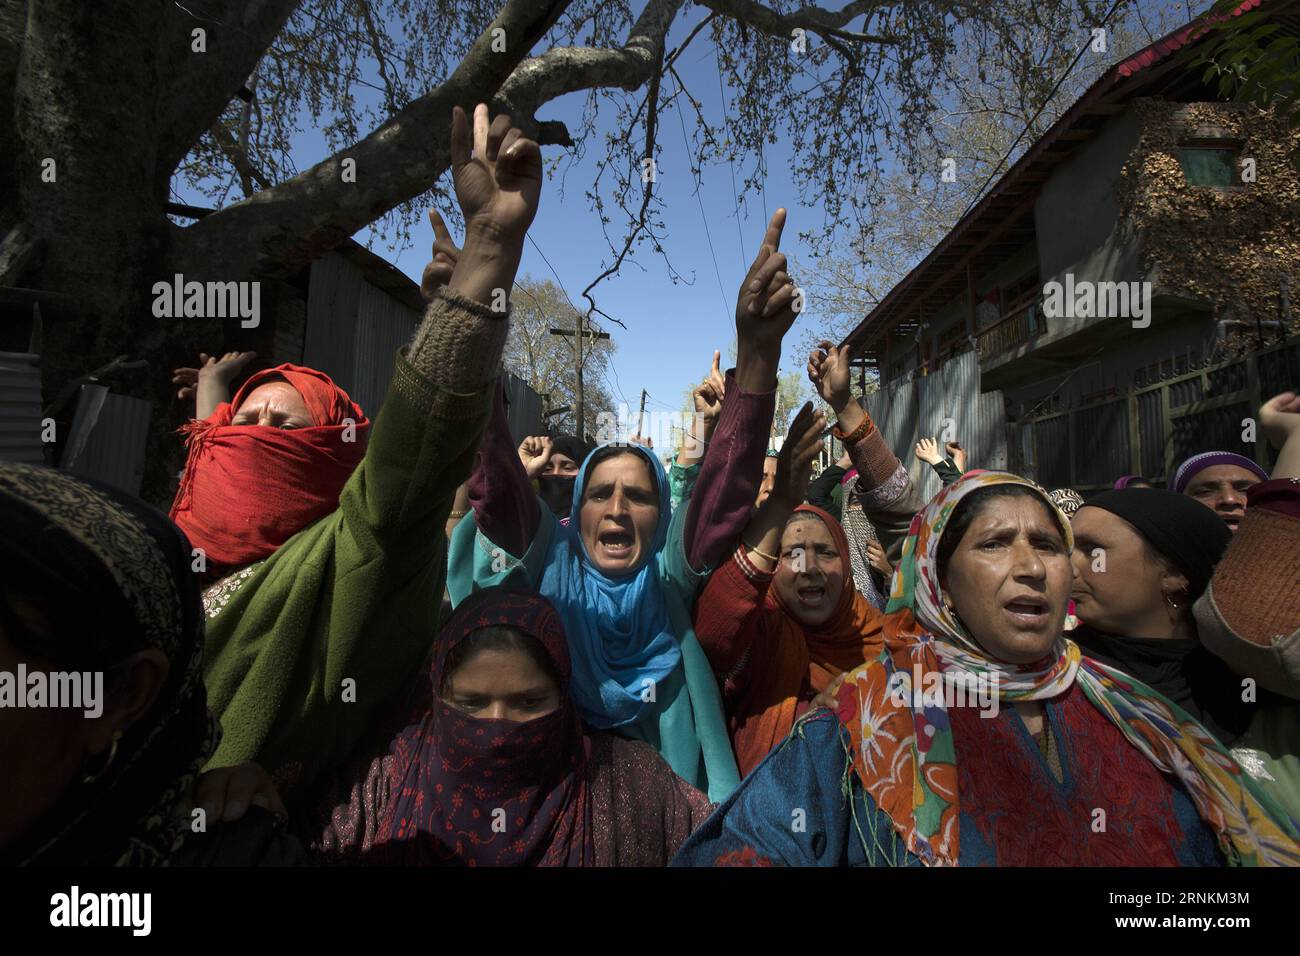 (170410) -- SRINAGAR, 10 aprile 2017 -- donne del Kashmir gridano slogan contro l'uccisione di un giovane durante la sua processione funeraria a Barsoo Ganderbal, circa 45 km a nord di Srinagar, capitale estiva del Kashmir controllato dagli indiani, 10 aprile 2017. Almeno sei persone sono rimaste uccise e oltre 36 feriti nel sparare da parte delle forze di sicurezza, mentre la violenza ha rovinato il voto per il seggio parlamentare nella capitale indiana del Kashmir, Srinagar, domenica. ) (wtc) INDIA-KASHMIR-SRINAGAR-FUNERALE JavedxDar PUBLICATIONxNOTxINxCHN Srinagar 10 aprile 2017 slogan di grida donne Kashmiri contro l'uccisione di un Foto Stock